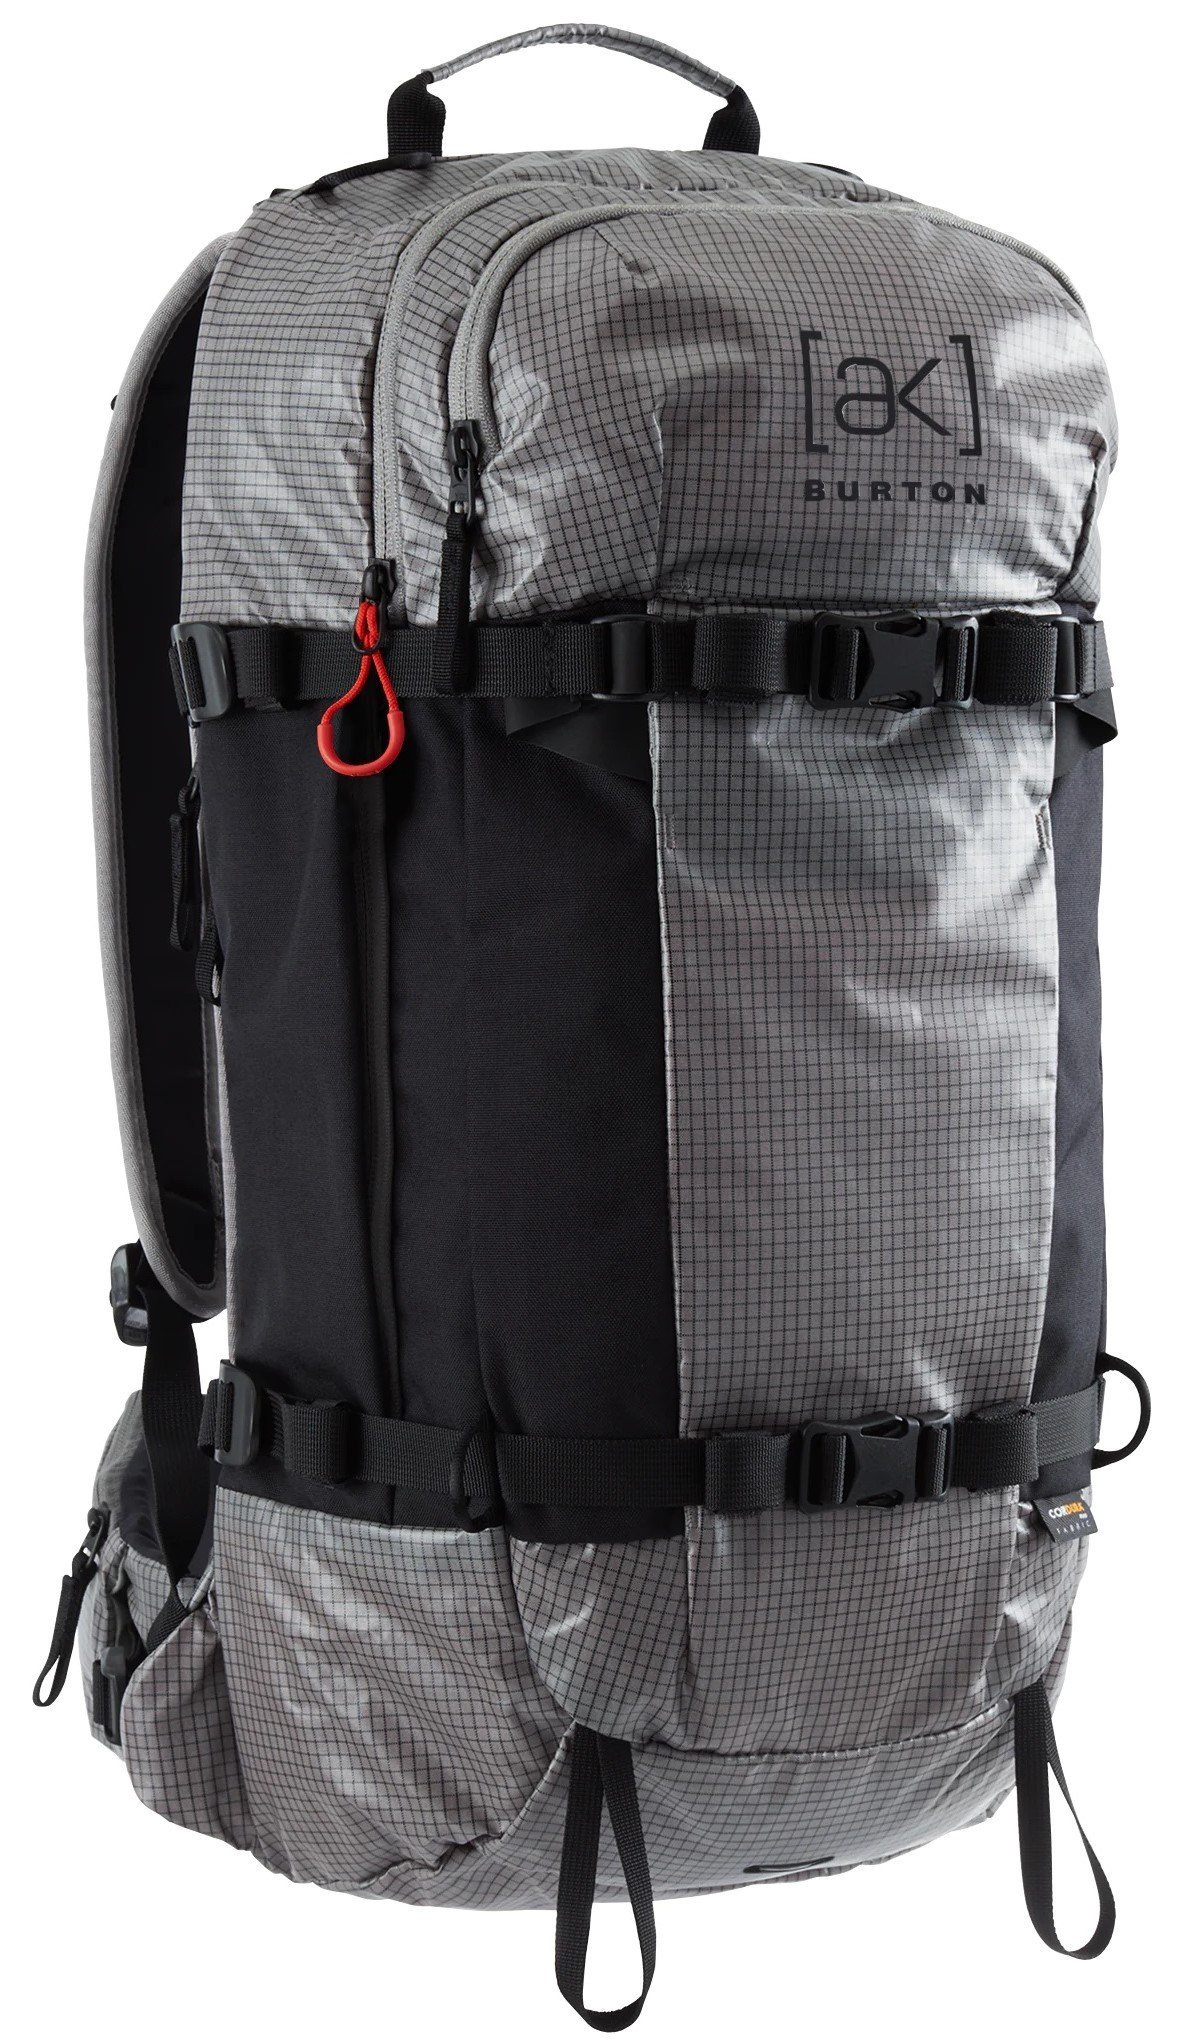 Burton AK Dispatcher 25L Backpack